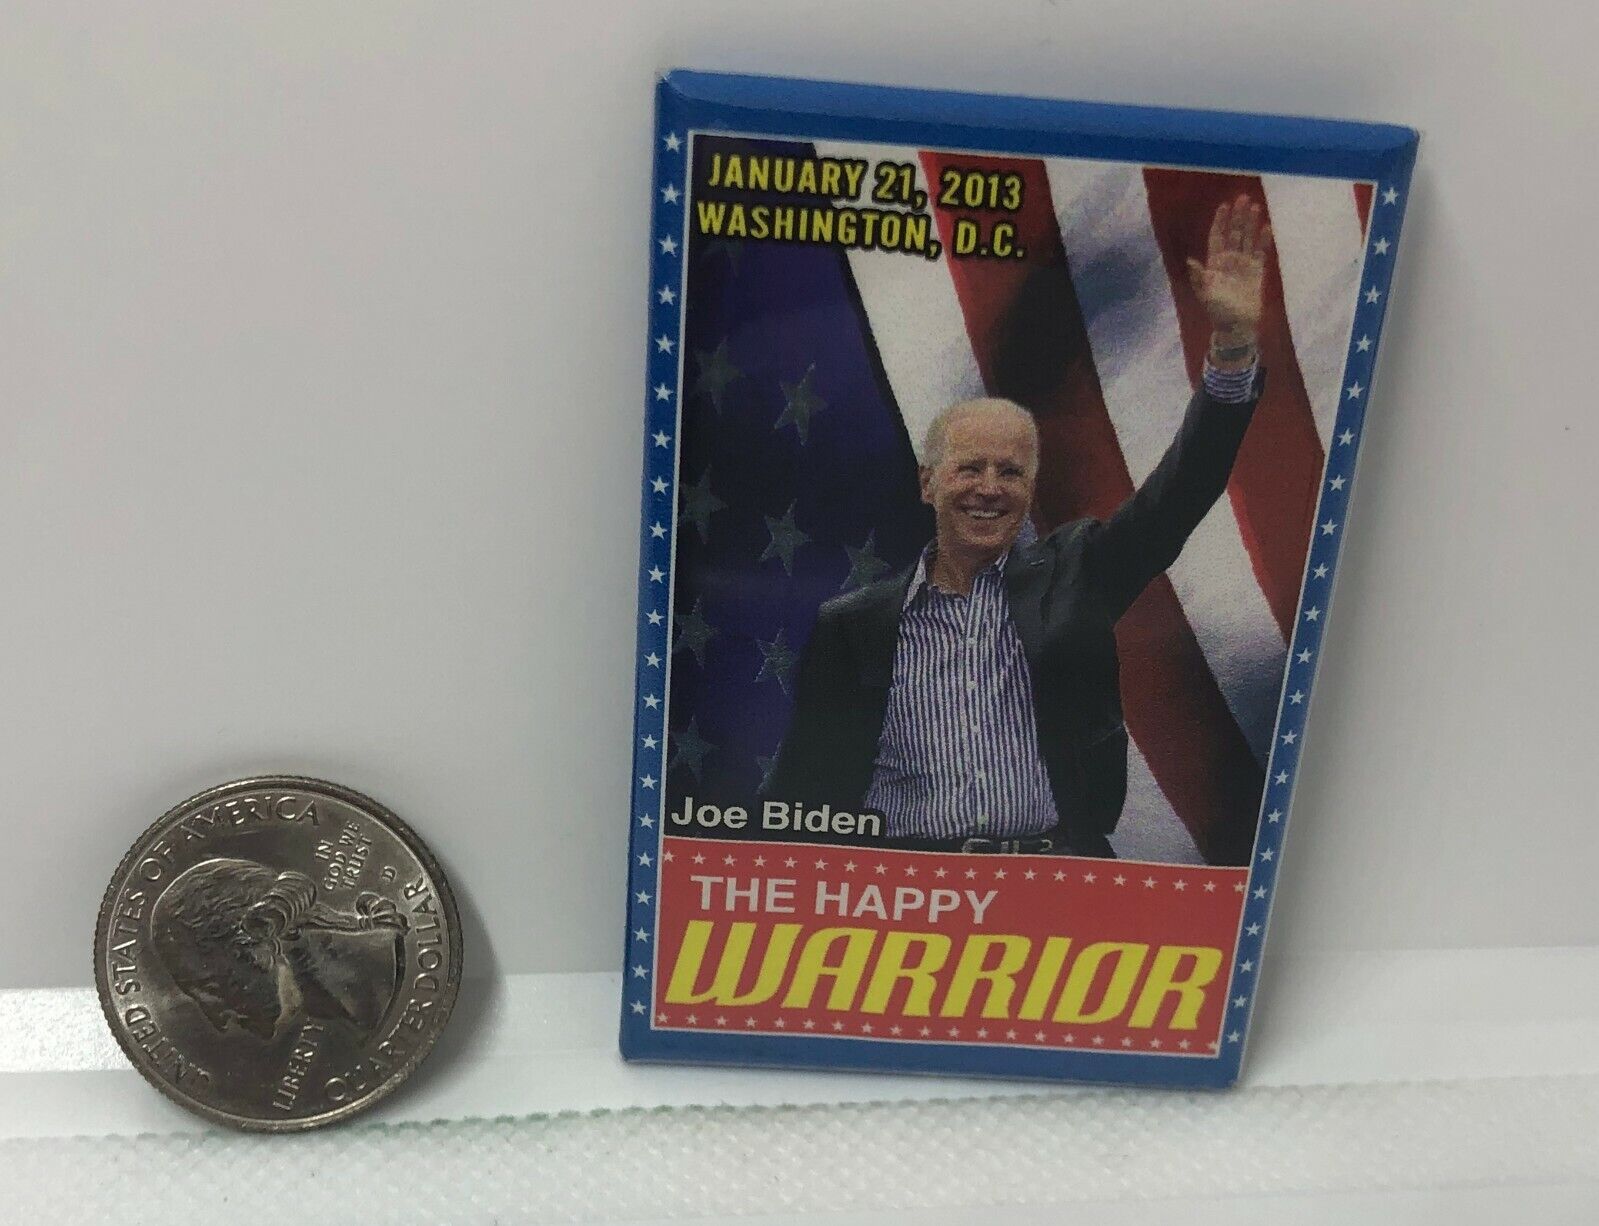 Joe Biden The Happy Warrior January 21 2013 Pin